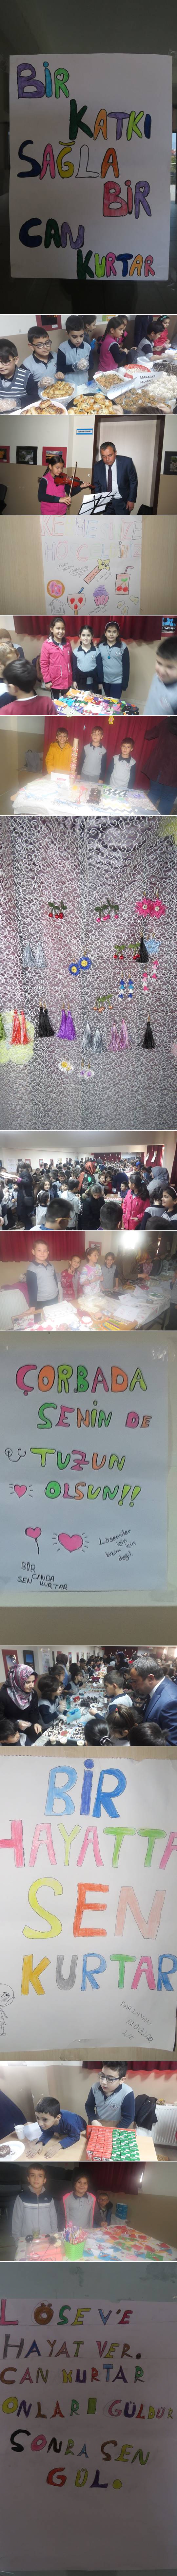 Sinop'un Boyabat İlçesi'nde Abdurrahman Güneş İlkokulu öğrencileri Lösev'e destek olmak amacıyla kermes açtı.